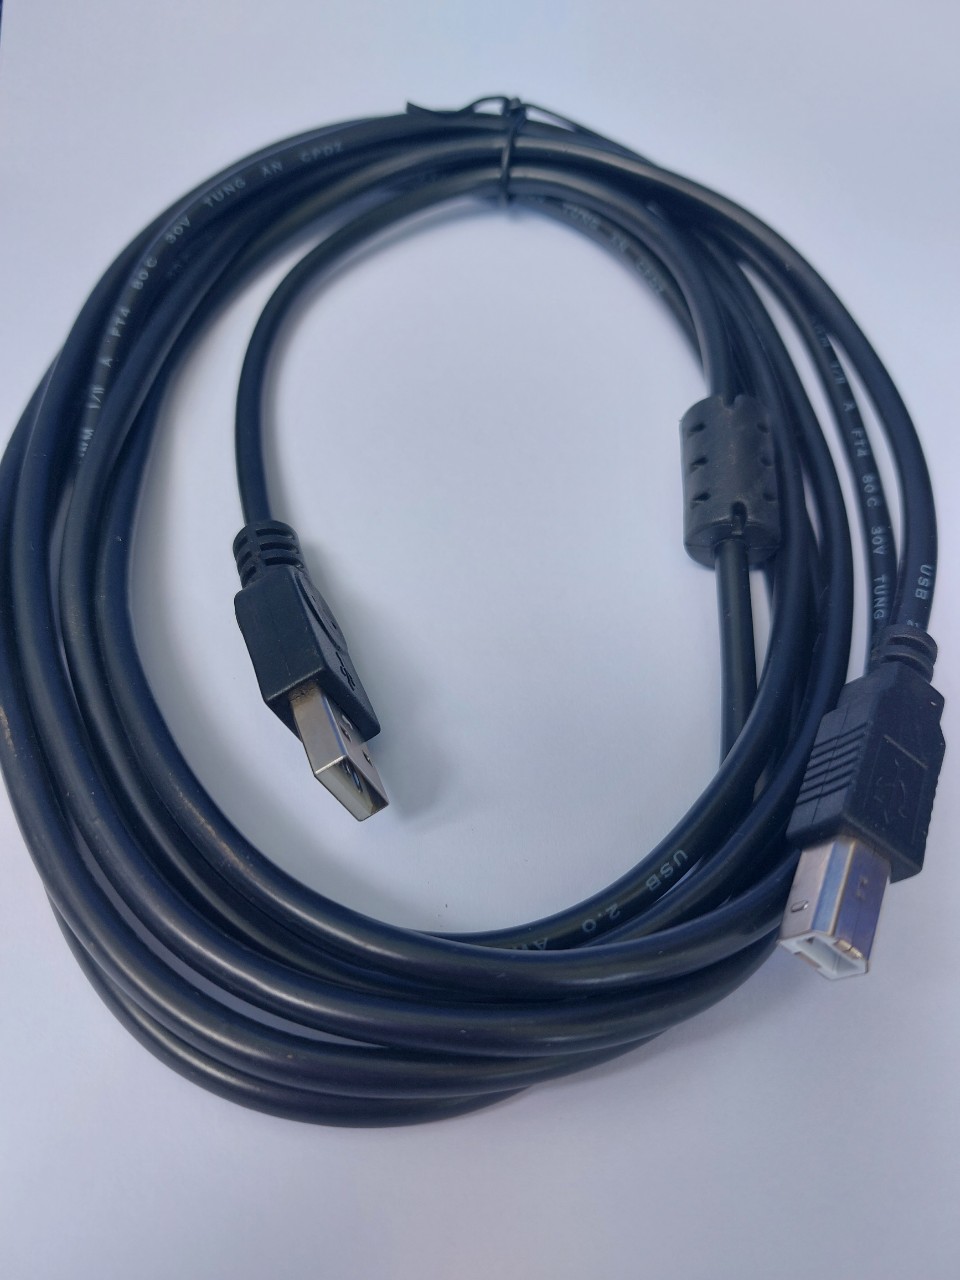 (HCM) Dây chỉnh vang số 1 ĐẦU VUÔNG, 1 ĐẦU USB dài 3M, chỉnh phần mềm nhiều dòng vang số Siso Tripath 1080, TP580 hay Hugo V6 -  - Cáp kết nối vang số với máy tính